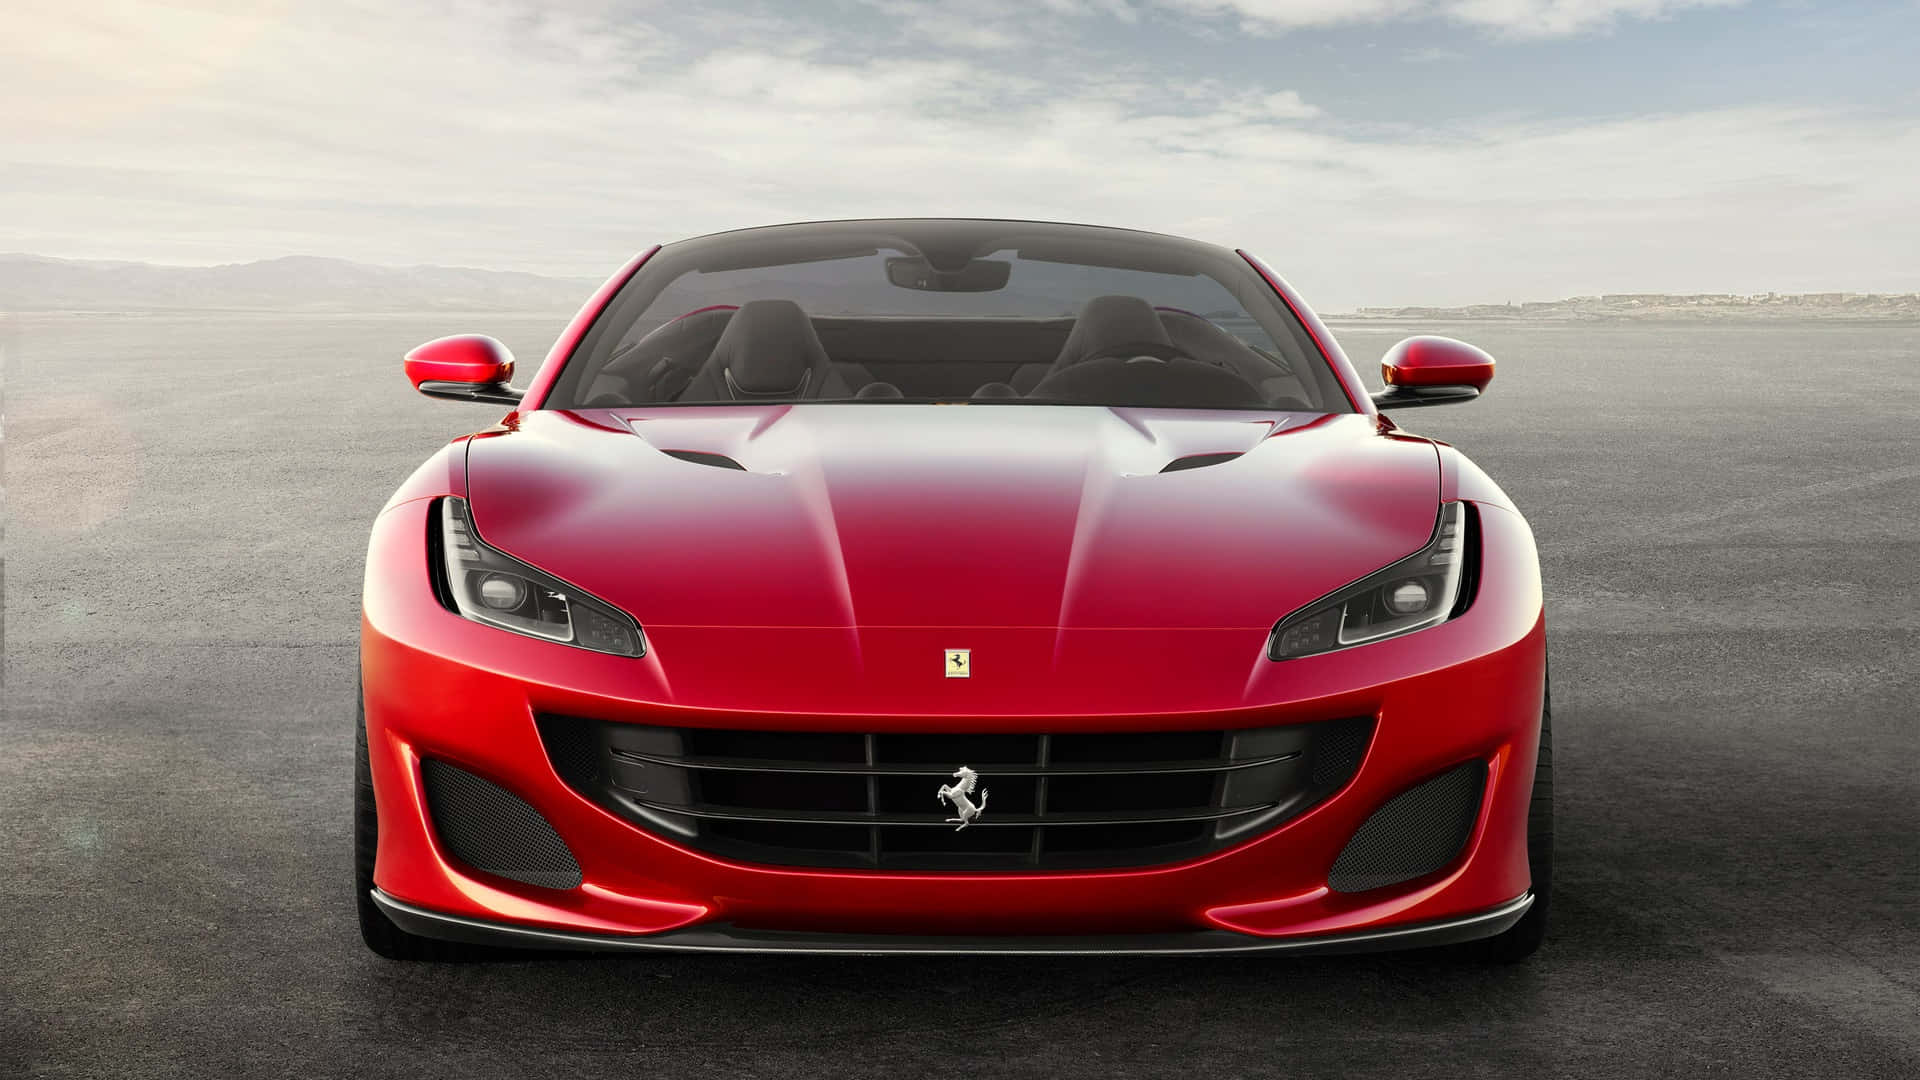 Captivating Ferrari Portofino in Breathtaking Scenery Wallpaper